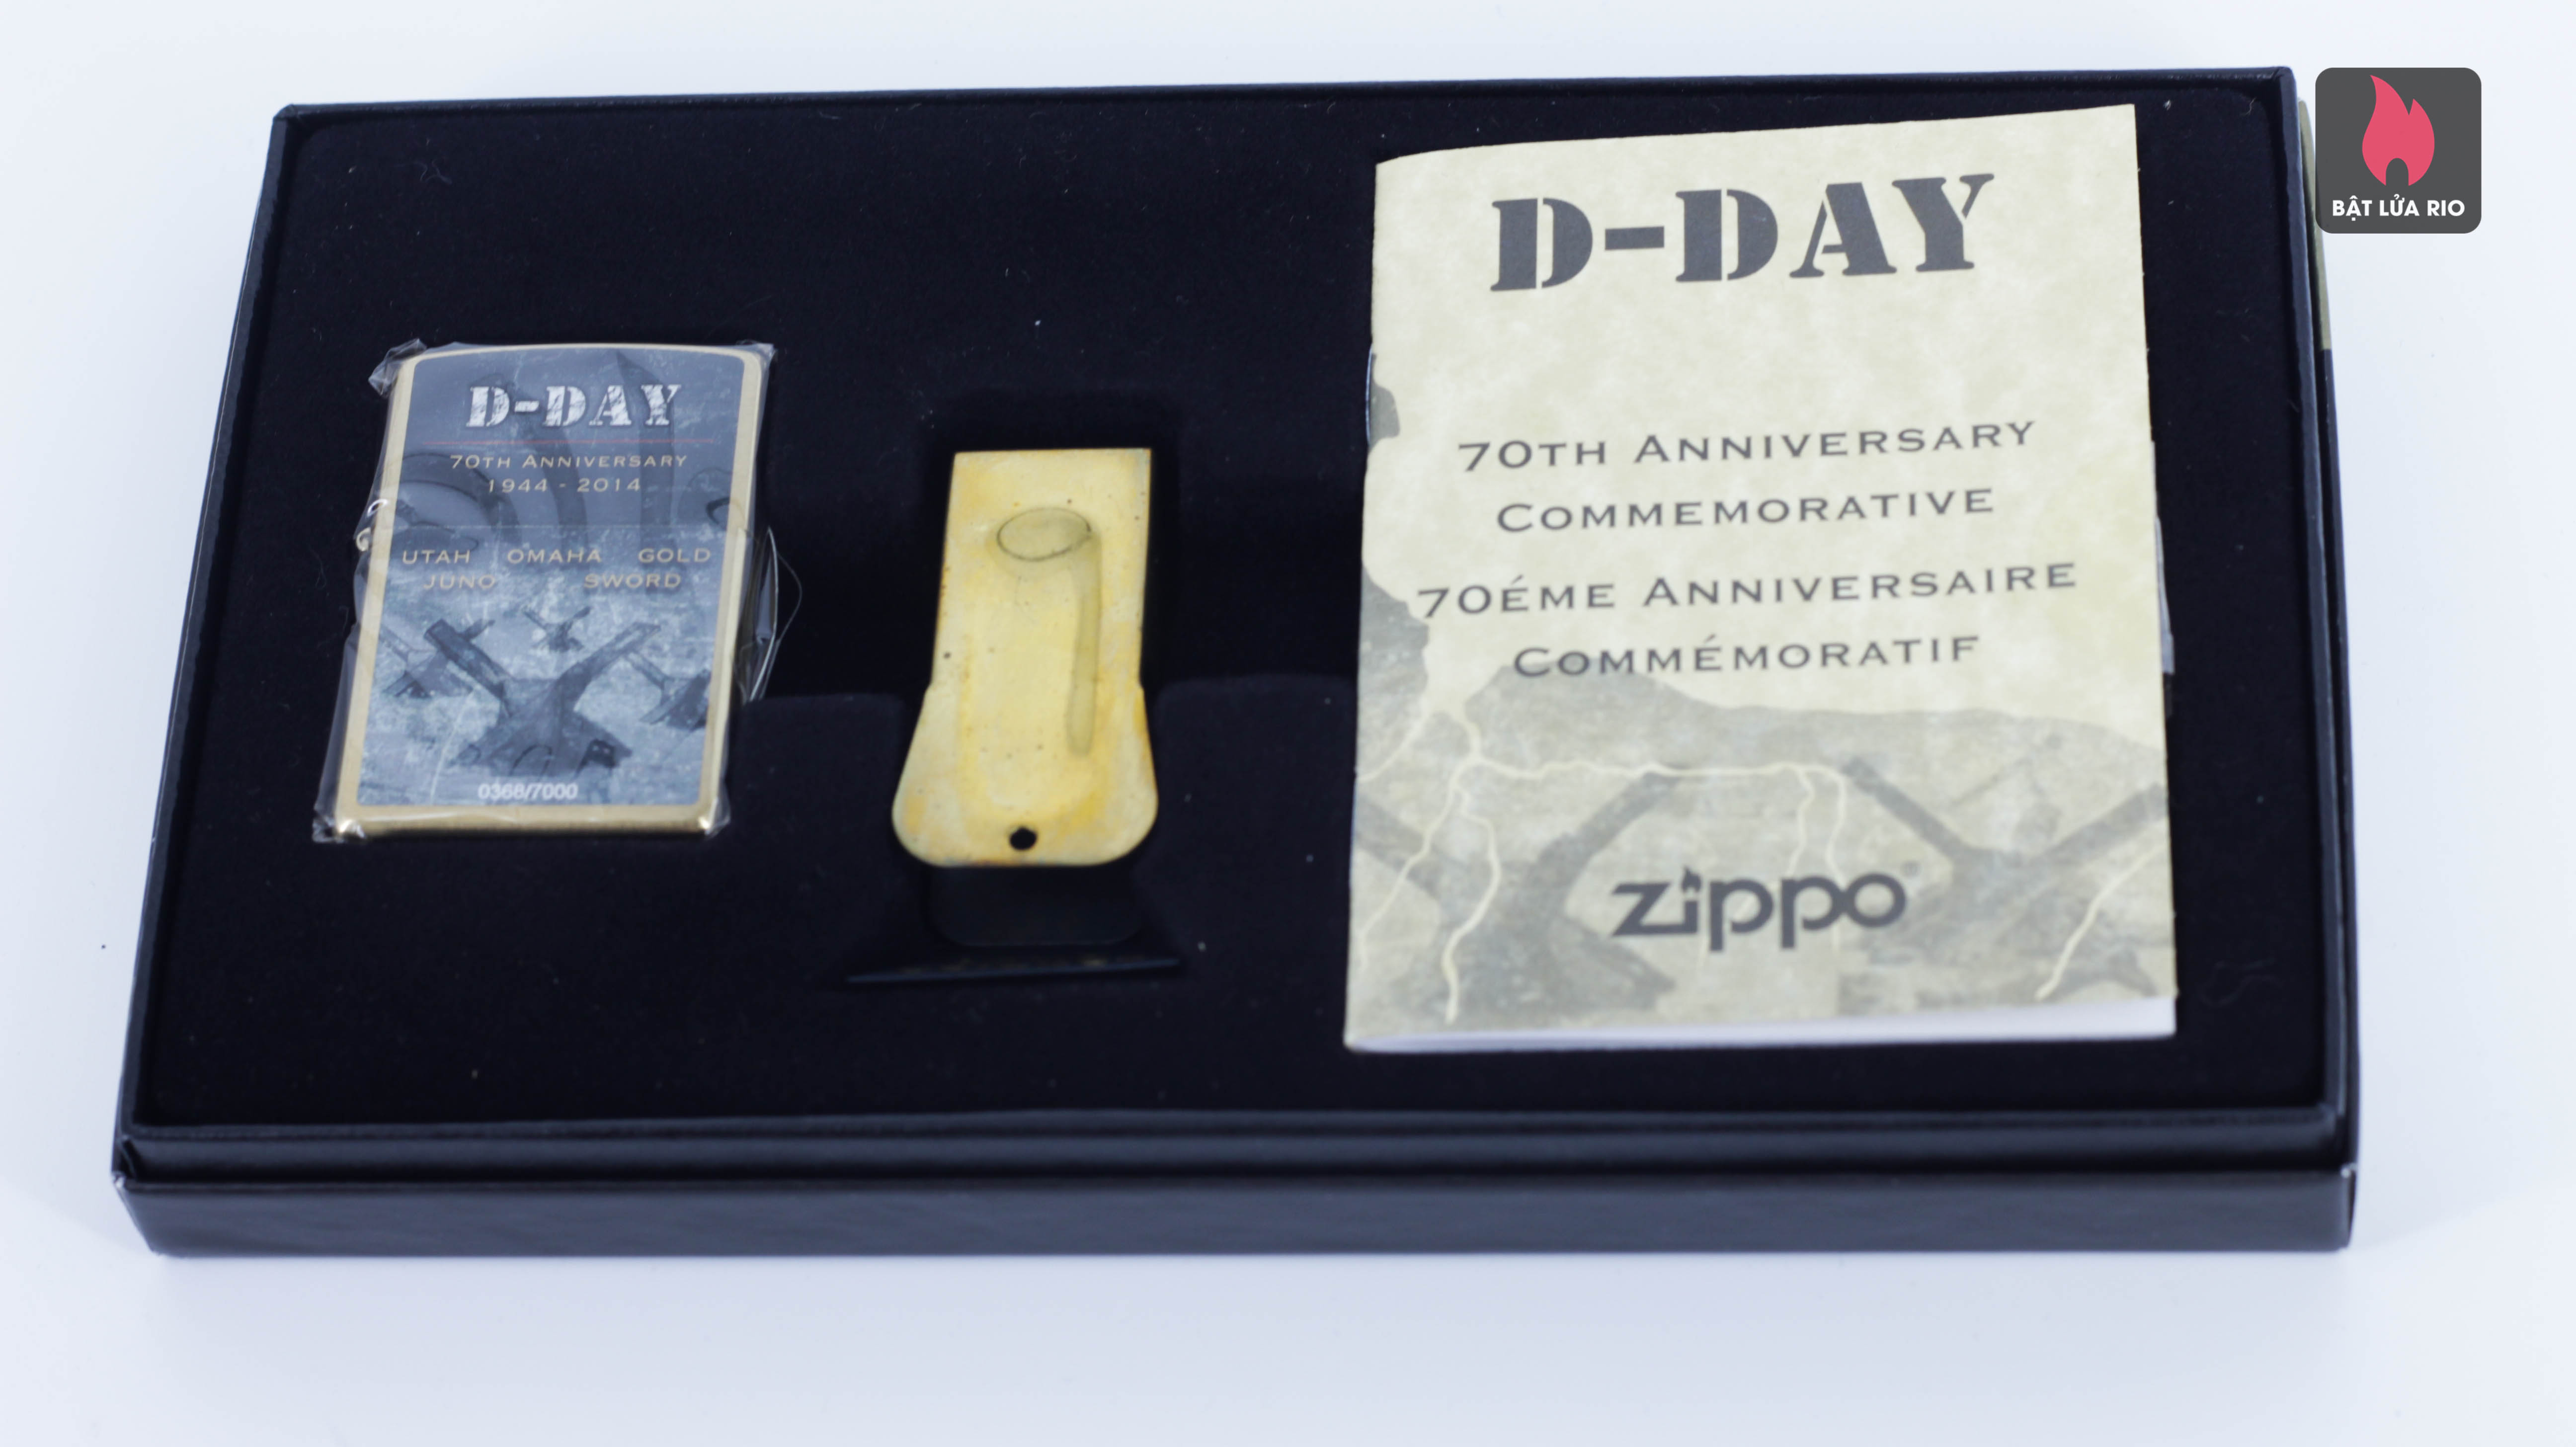 ZIPPO 2014 - D-DAY - 70TH ANNIVERSARY COMMEMORATIVE